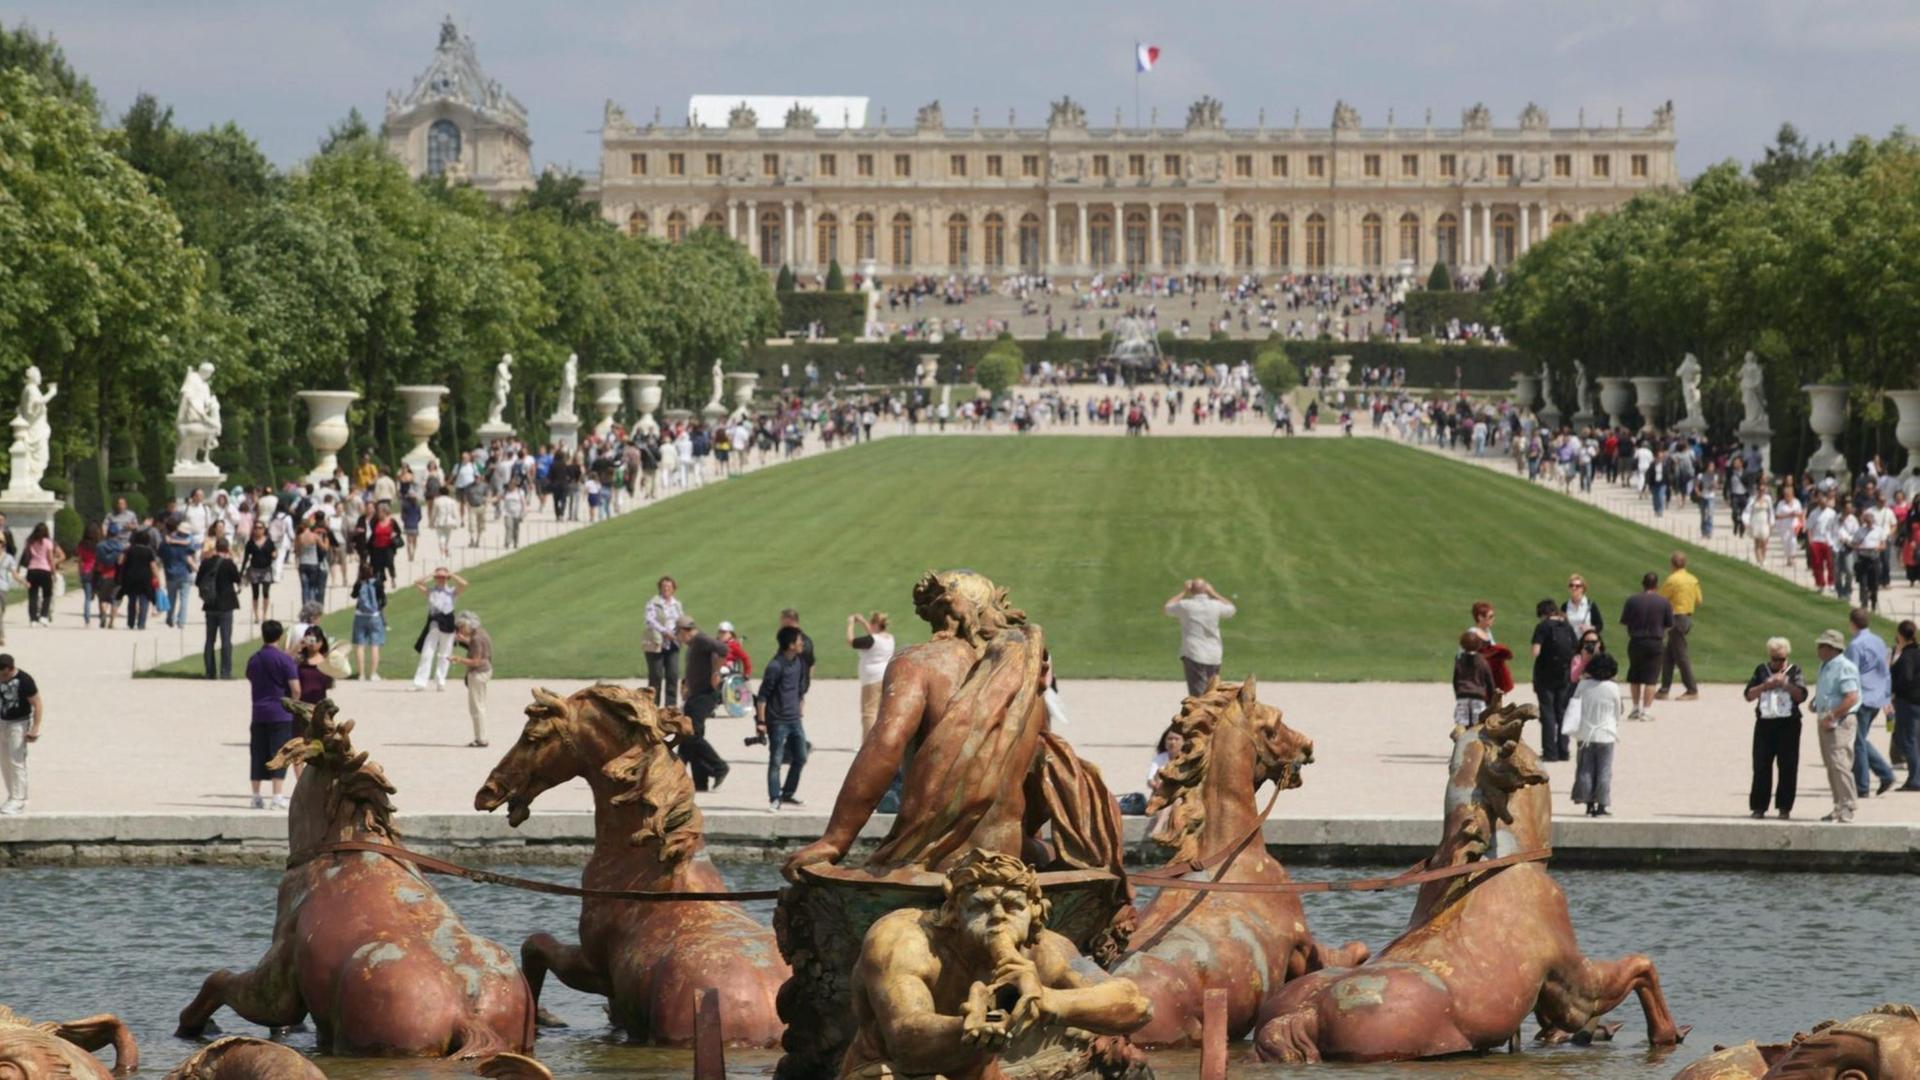 Das Bild zeigt die Gartenfassade des Schlosses von Versailles, im Vordergrund der Apollo-Brunnen.